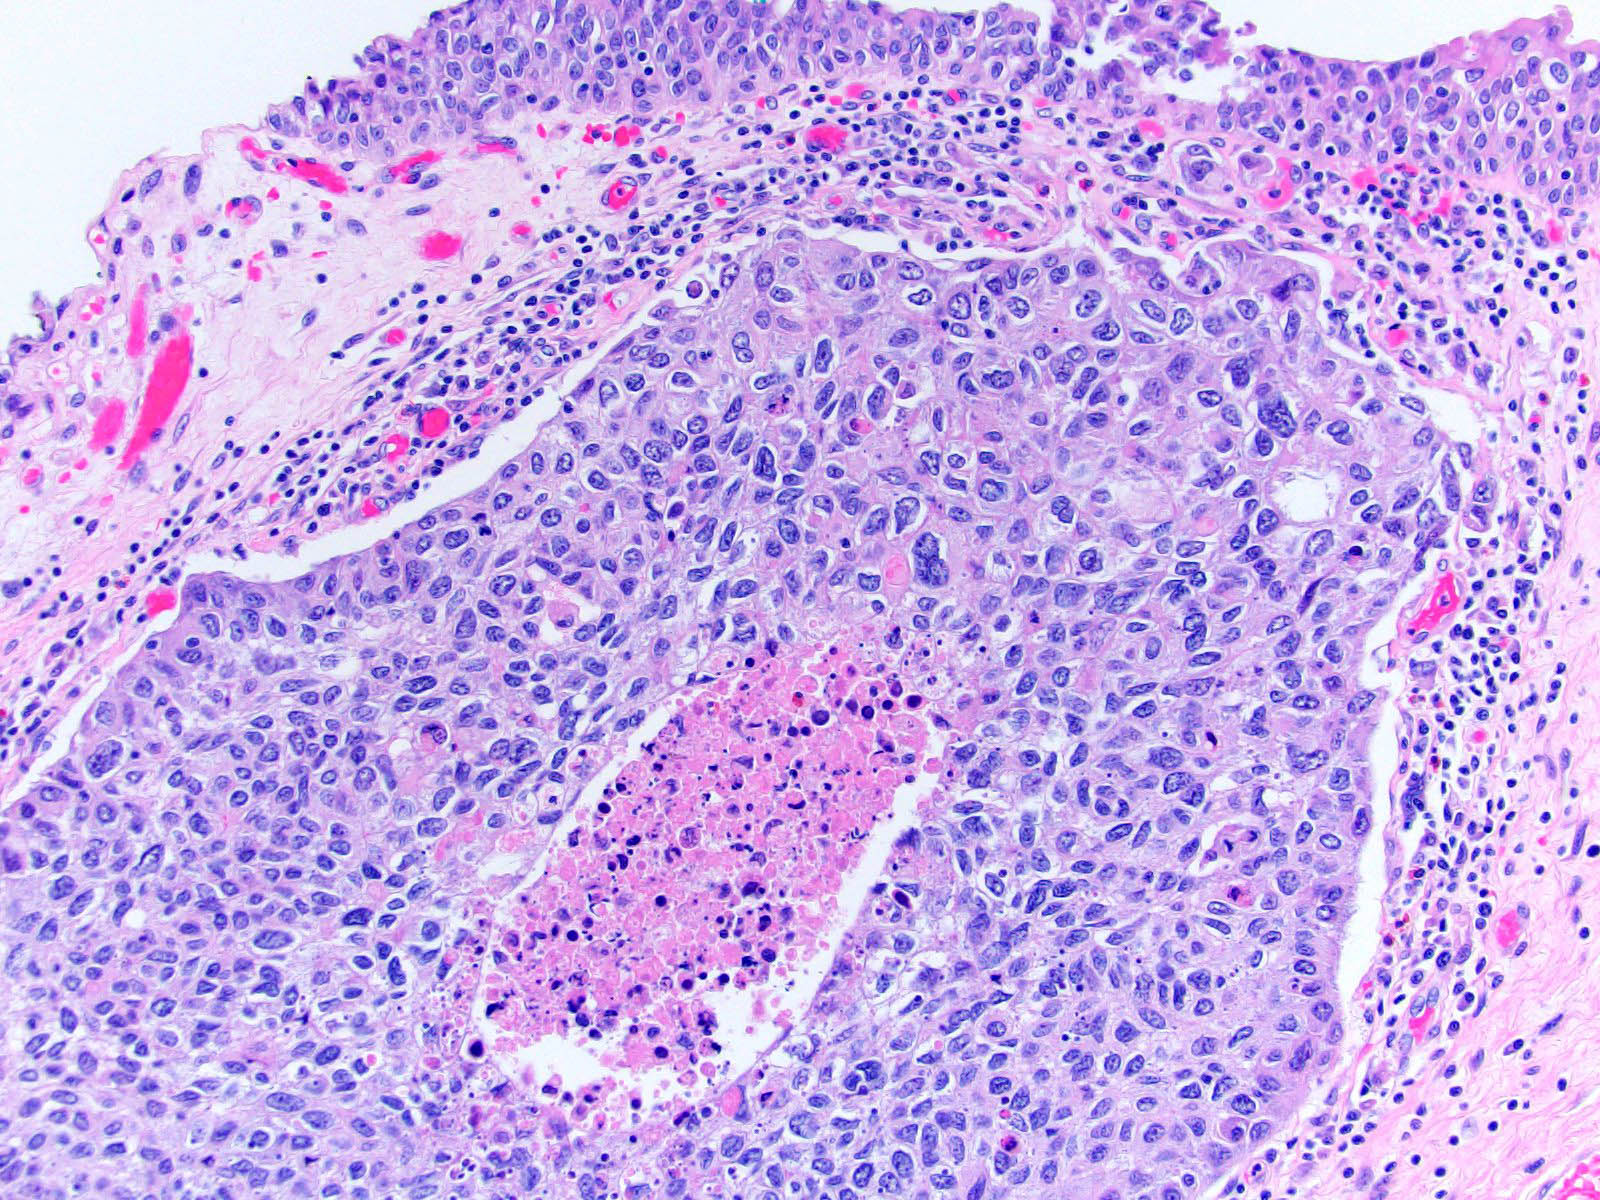 Prostate adenocarcinoma pathology outlines